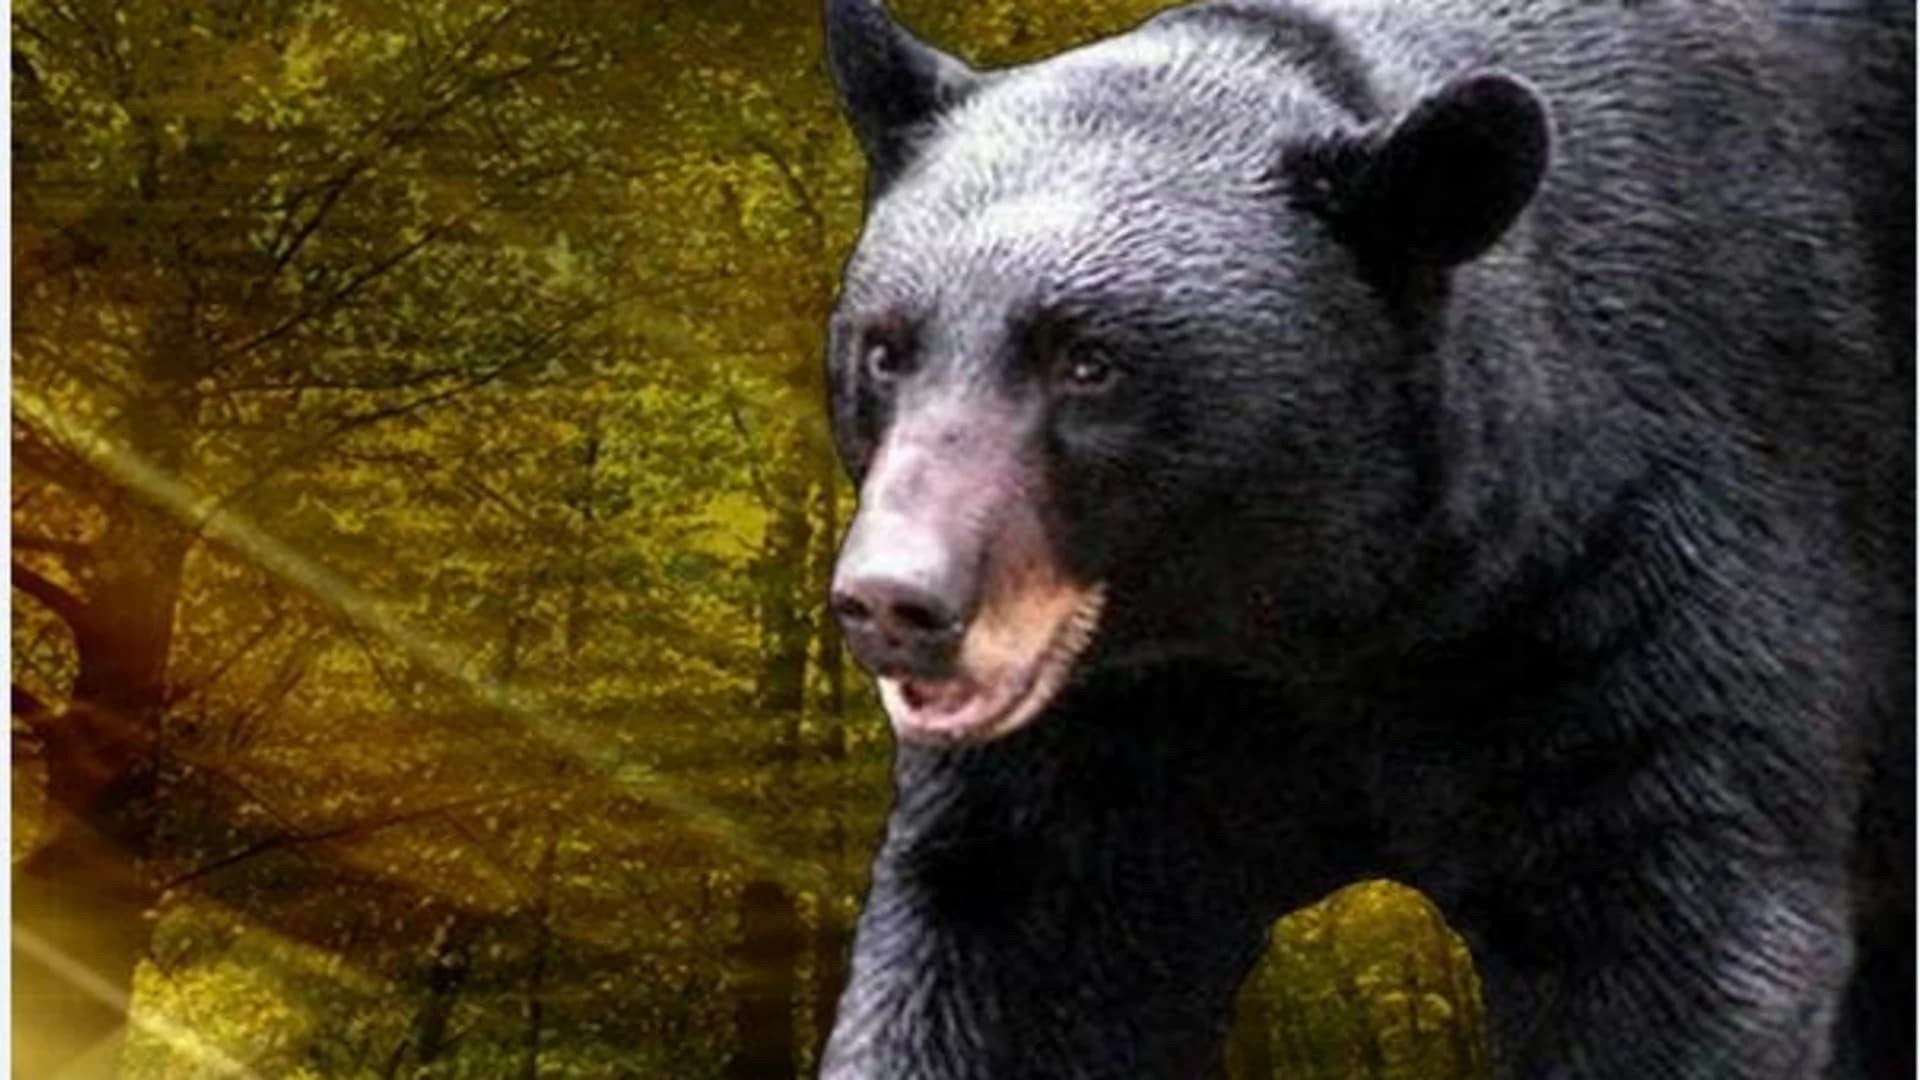 Bowhunting group says NJ bear set world record